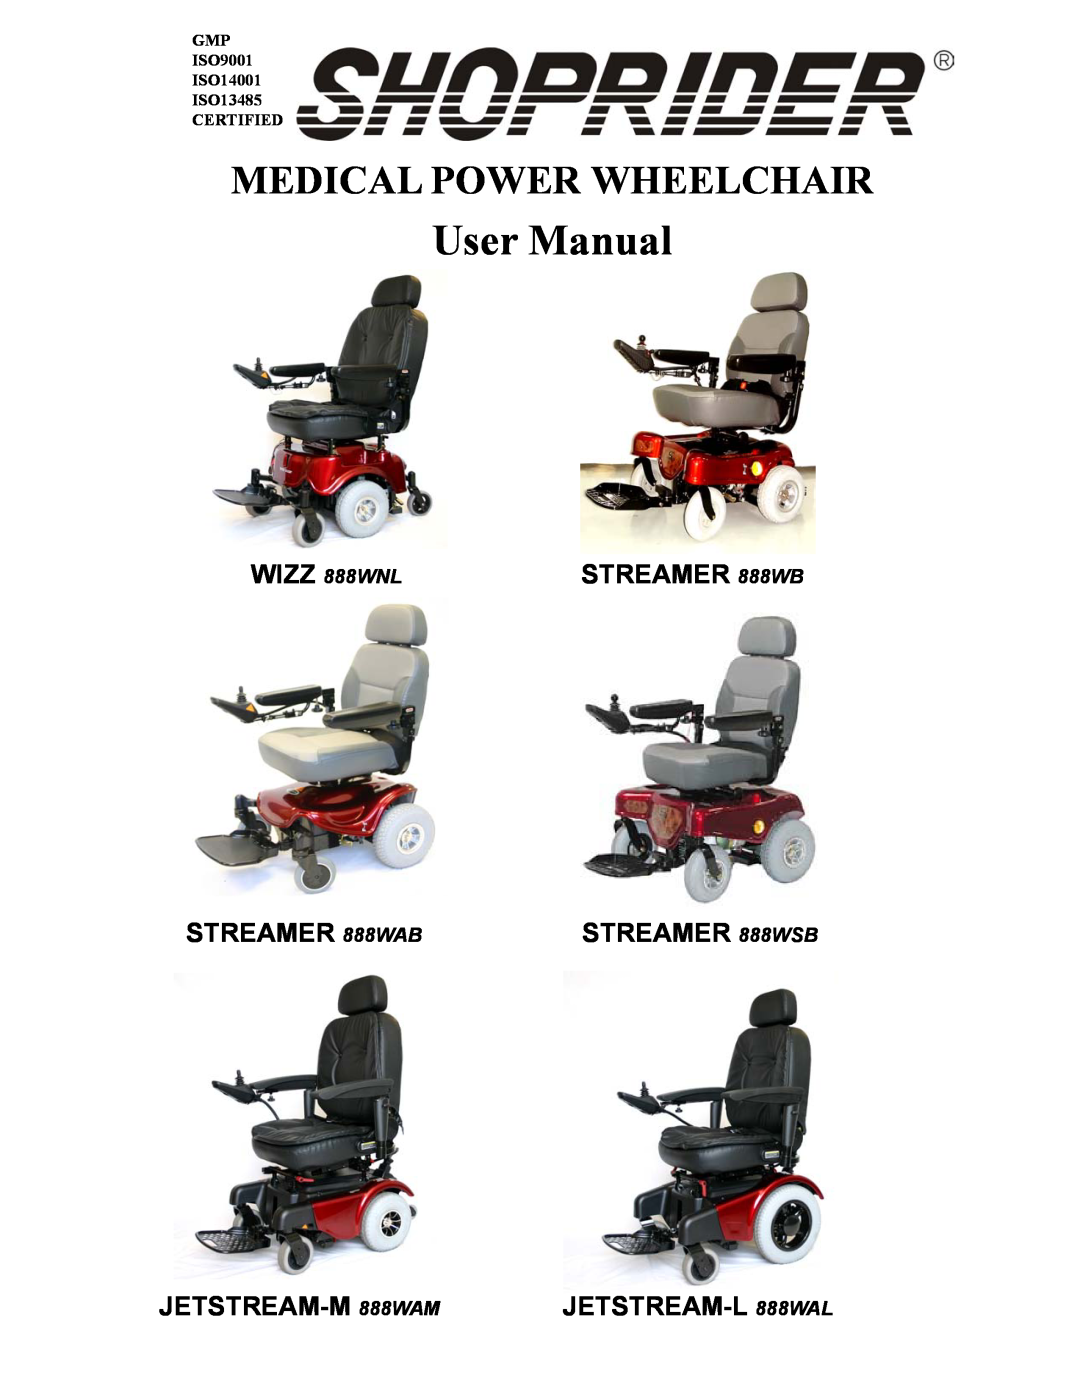 Shoprider Steamer 888WSB manual User Manual, Medical Power Wheelchair, STREAMER 888WB, STREAMER 888WAB, STREAMER 888WSB 